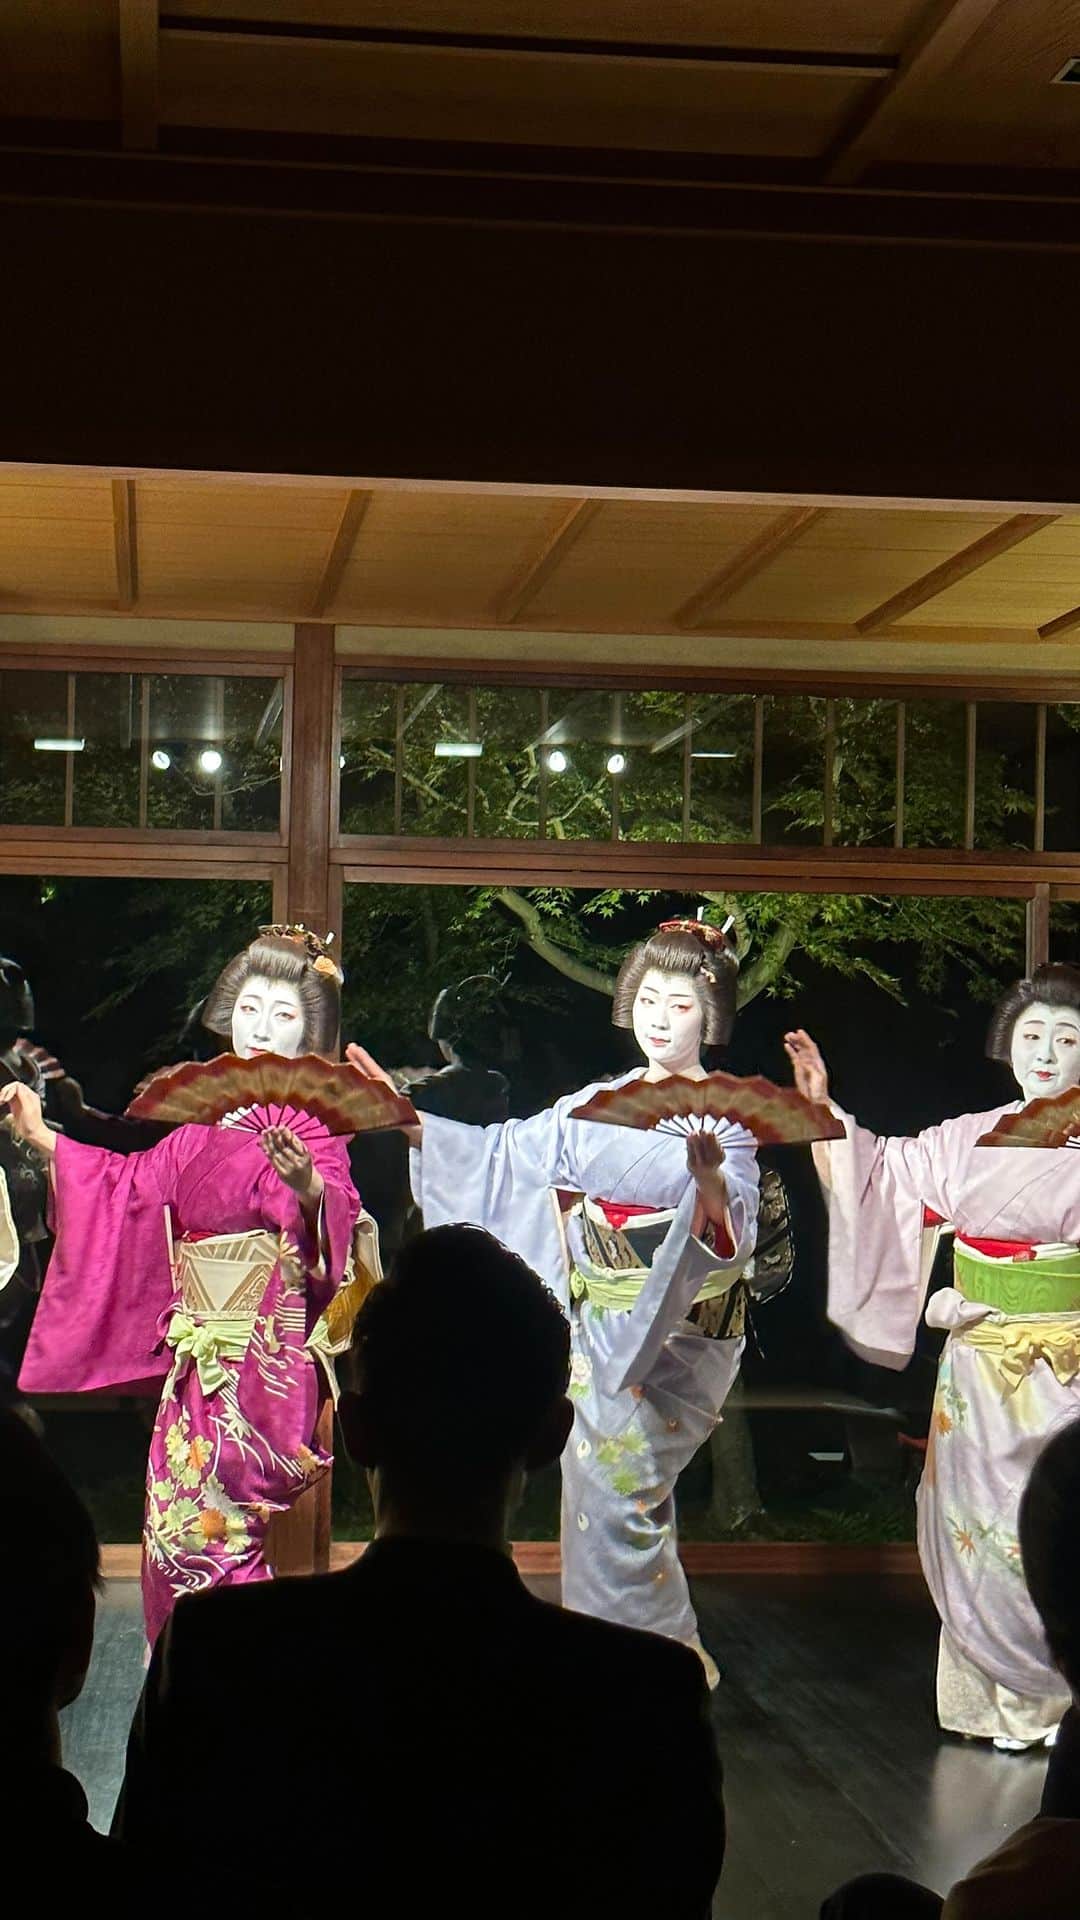 大桃美代子のインスタグラム：「舞妓さんのデビューを目撃。最後に登場です、見てね。  京都沼を垣間見た夜。  ご贔屓さんしか参加できない会に、  お姉さんにお声がけいただき、  相席させていただきました。  ありがとうございます。  高台寺の「十牛庵」の食も踊りも楽しめる時間。 @hiramatsu_restaurant  @jugyuan   素囃子の「安宅」に富樫と弁慶が浮かびました。（勧進帳を調べてね）  何も説明のないままスタート。  笛の音、小鼓、大皮、大鼓で  息つまる歌舞伎のシーンを表現。  「あんたさん、これ知ってはります？」の世界です。  粋な旦那衆は、納得の表情。  私はもっぱらお料理に感激。  旬の食材に、目にも舌にも染み入る。  深まりゆく秋を五感で味わう。  やっぱり、京都は格別です。  究極の接待は、心地よく、ご祝儀の循環。  皆さんで財布を開く瞬間を初めて体験。  京都恐るべしべし。  ビジネスのファン化が言われますが、  喜んでお金が循環する場が、お茶屋さんでした。  京都はご贔屓さんと貢献で文化がつづいてきたのです。  この空間、貴重な体験でした。  お茶屋さんの女将の企画力、集客力に圧巻。  皆様もチャンスがあったら、怖がらず、是非京都の沼にお出かけください。  ご贔屓さんが、パスポートです。  京都の奥座敷ビジネス。  勉強になりました。  #京都グルメ　#舞妓 #舞子　#芸妓　#安宅 #お茶屋 #京都ディナー #ひらまつ　#高台寺　#京おどり#」